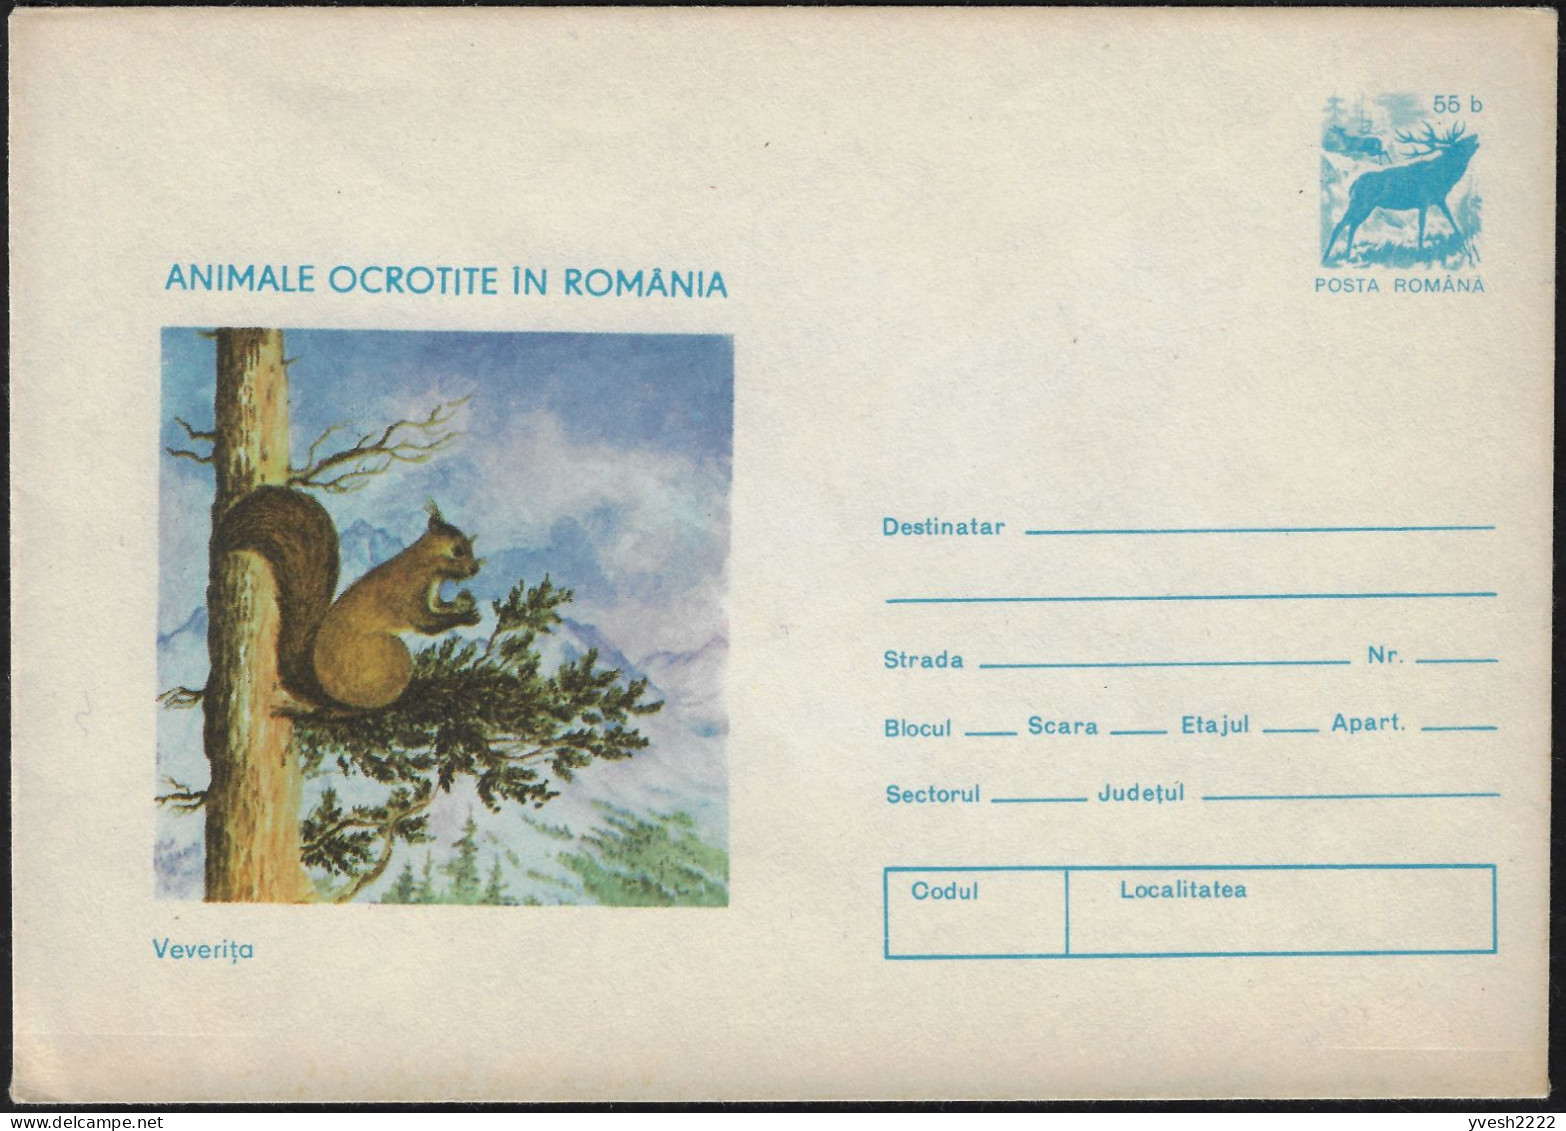 Roumanie 1977. Entier Postal, Animaux Protégés En Roumanie. Écureuil, Cerf - Rongeurs